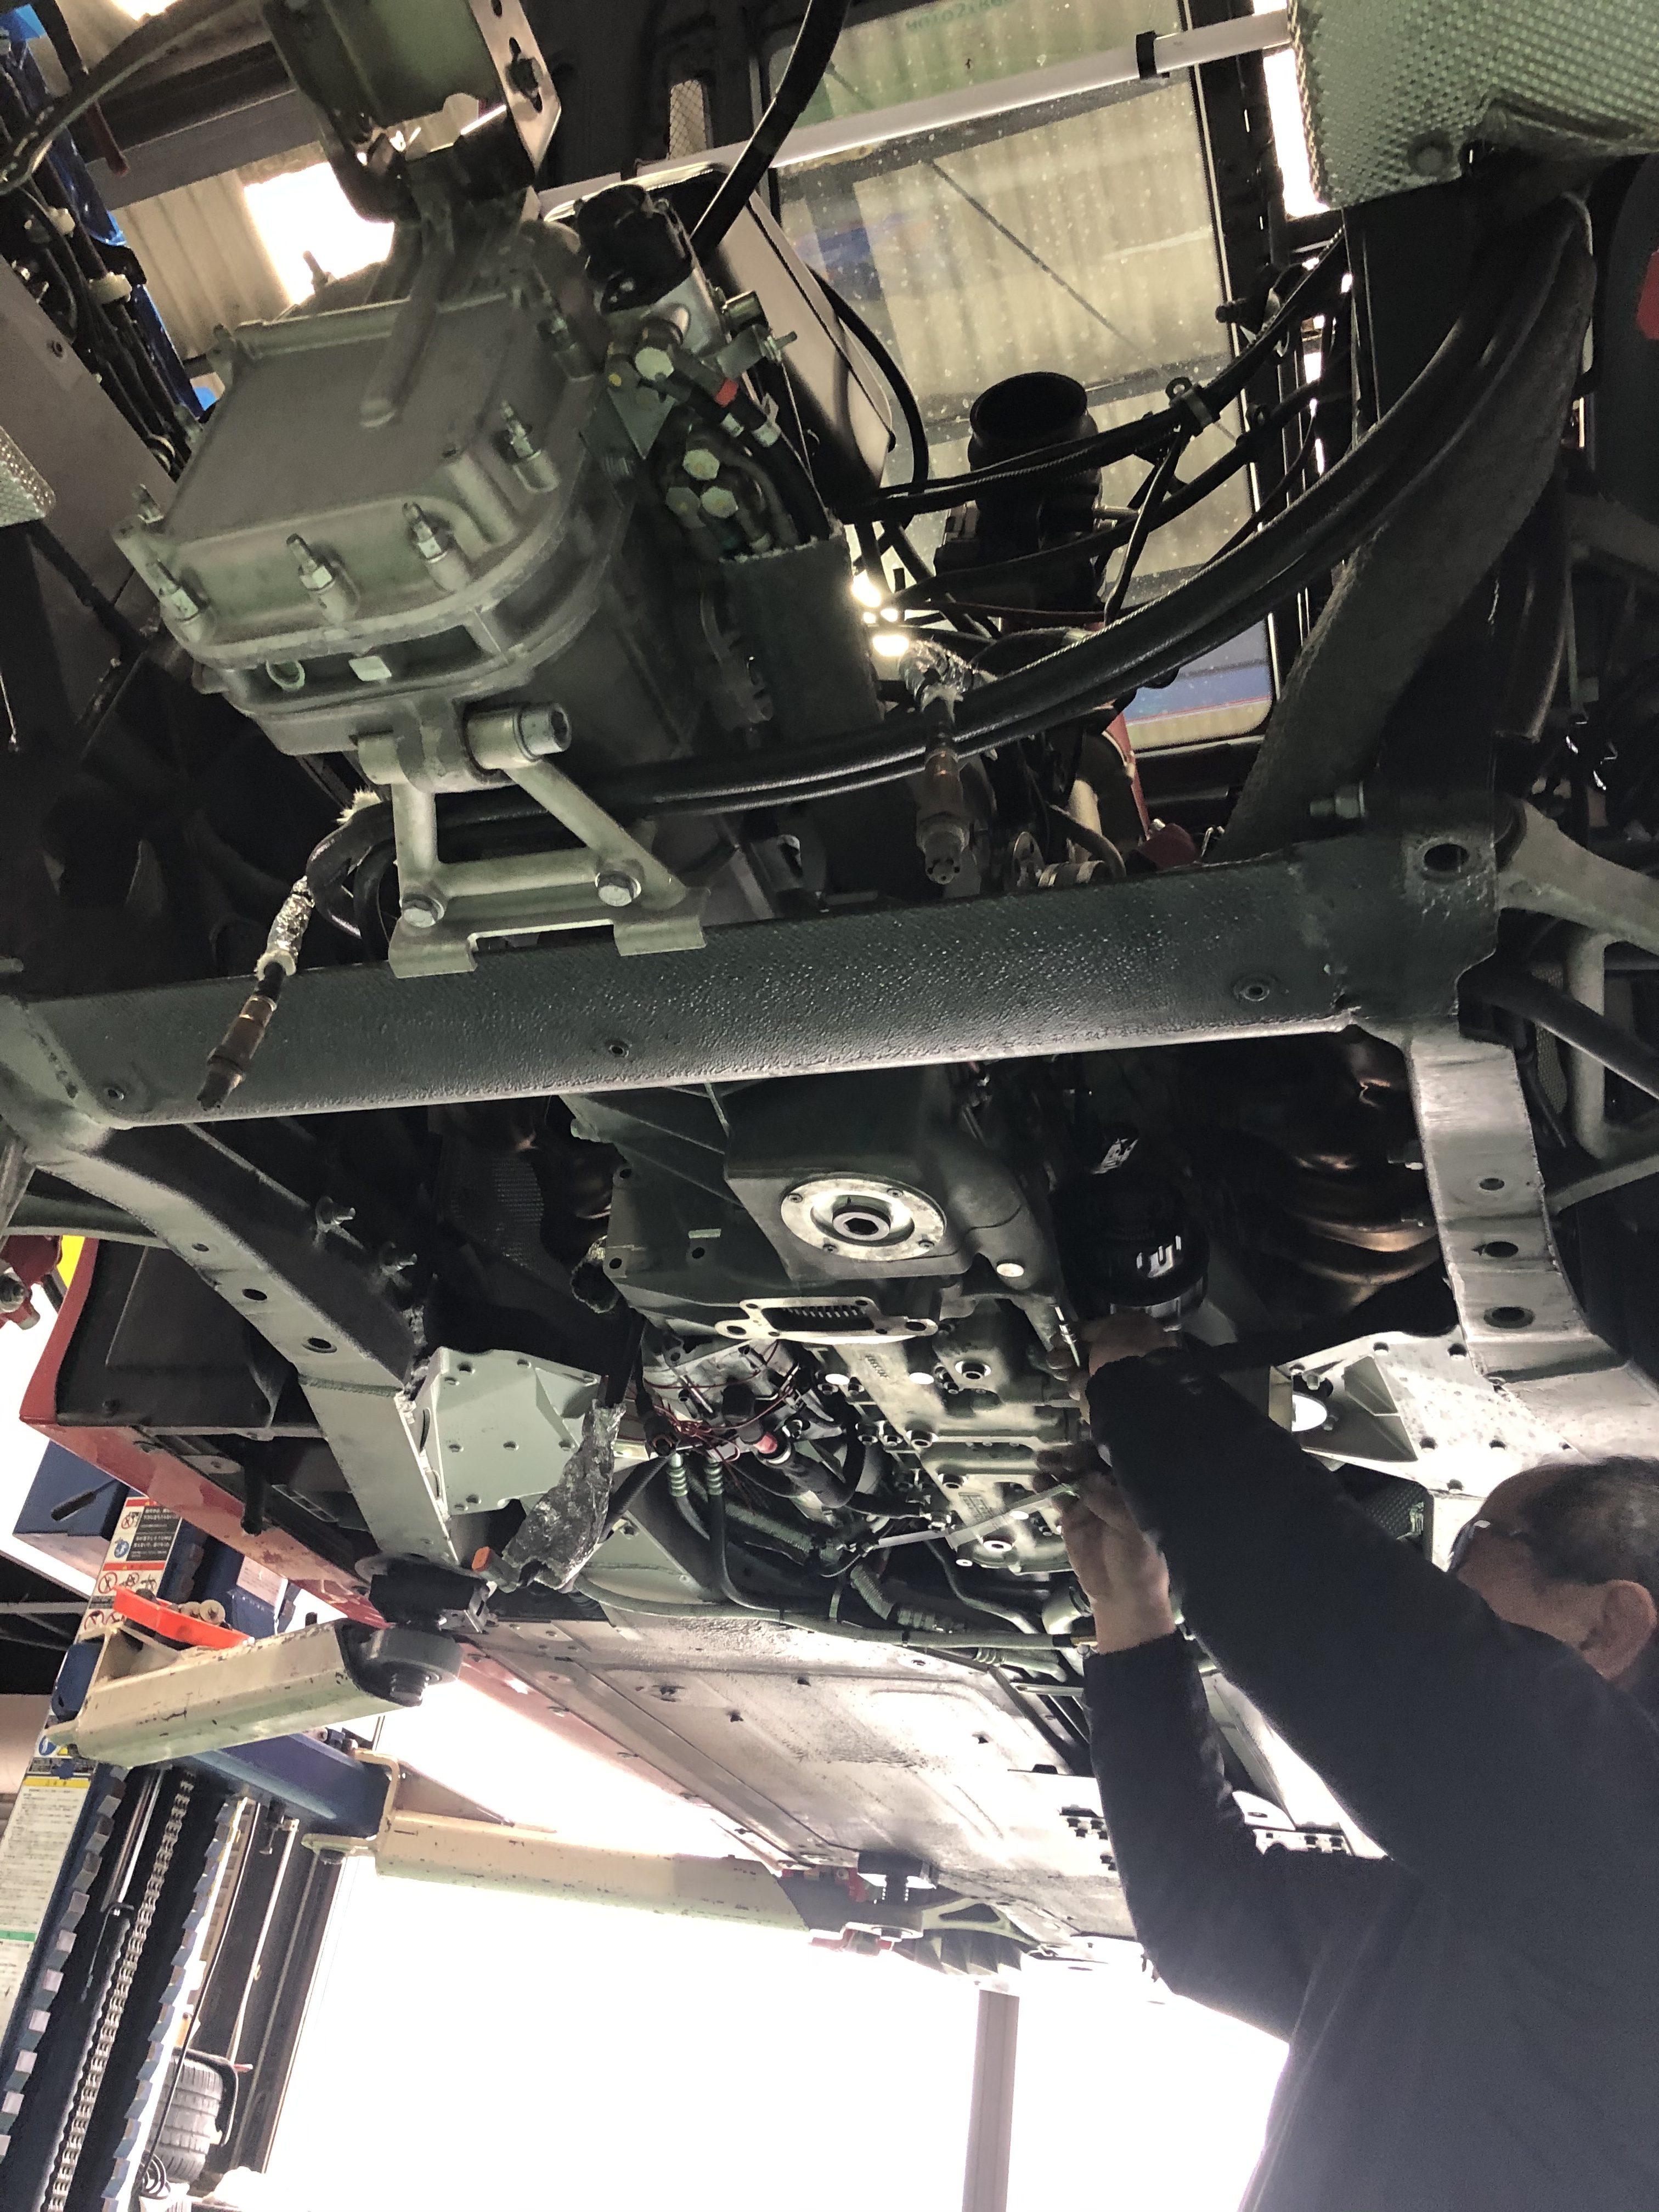 クラッチ板交換 実績1万台以上 岐阜市の車の修理 クイック整備のアウトストラーダ